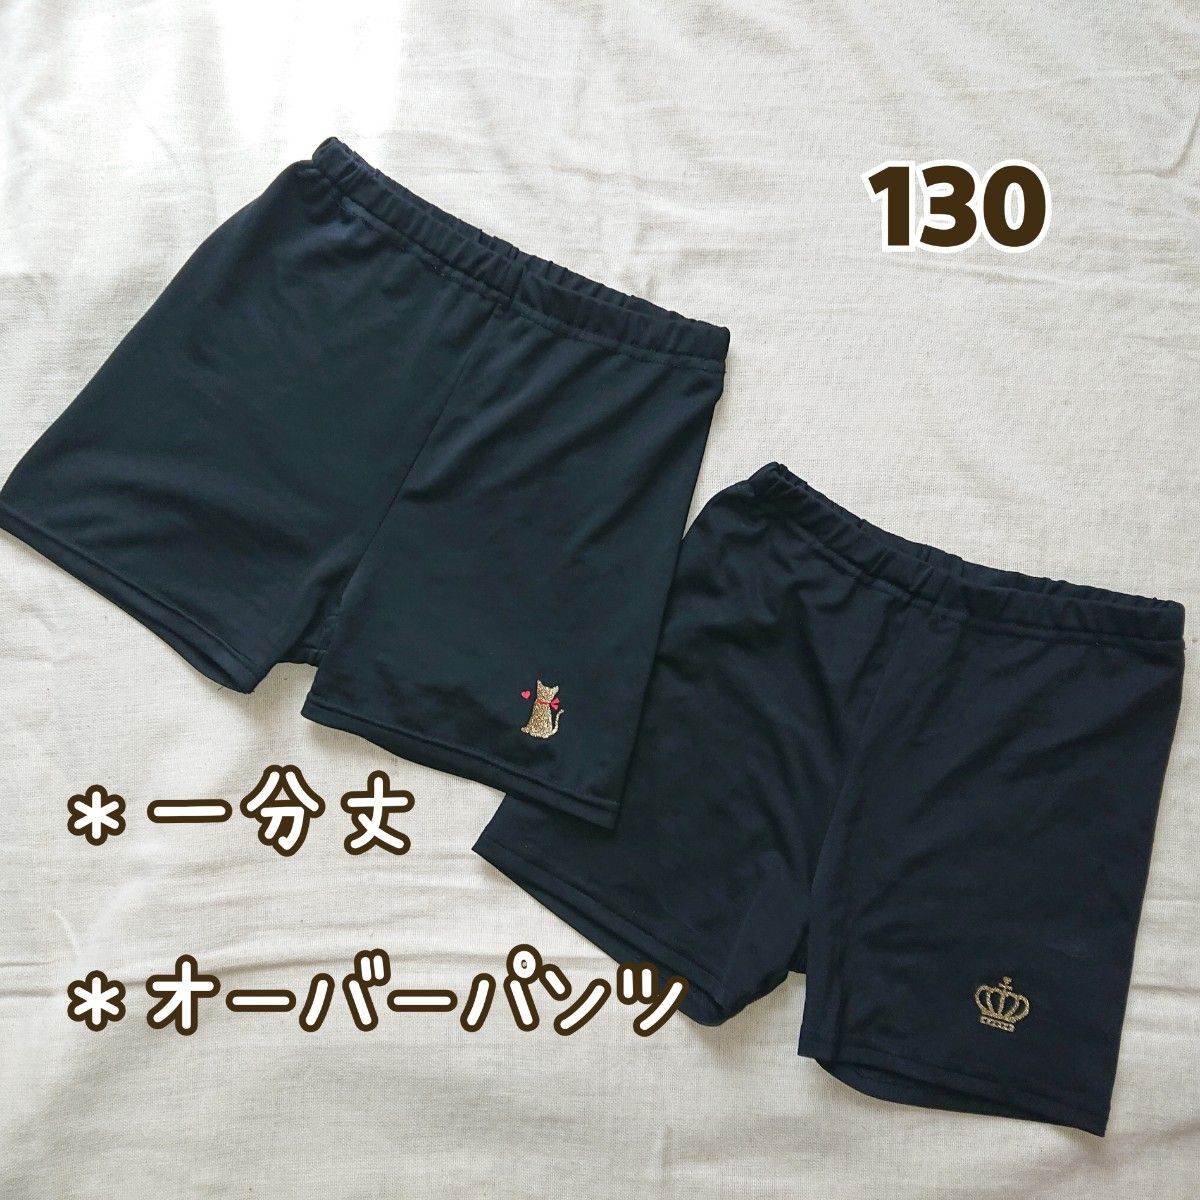 【130】オーバーパンツ ２着セット(黒・一分丈)